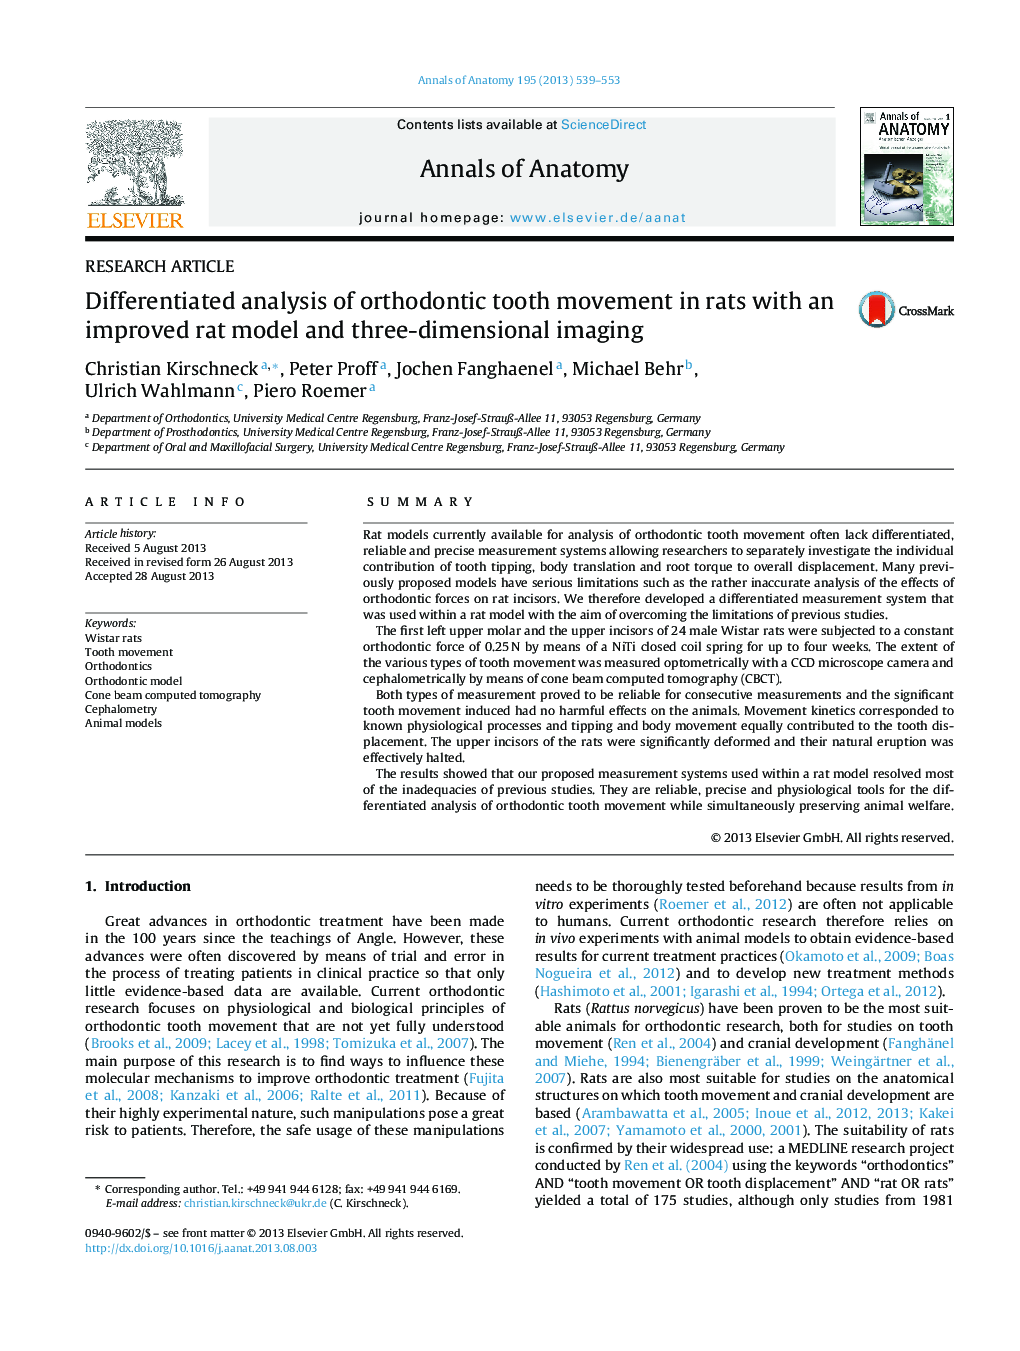 تجزیه و تحلیل متمایز جنبش دندان ارتودنسی در موش صحرایی با یک مدل رت بهبود یافته و تصویربرداری سه بعدی 